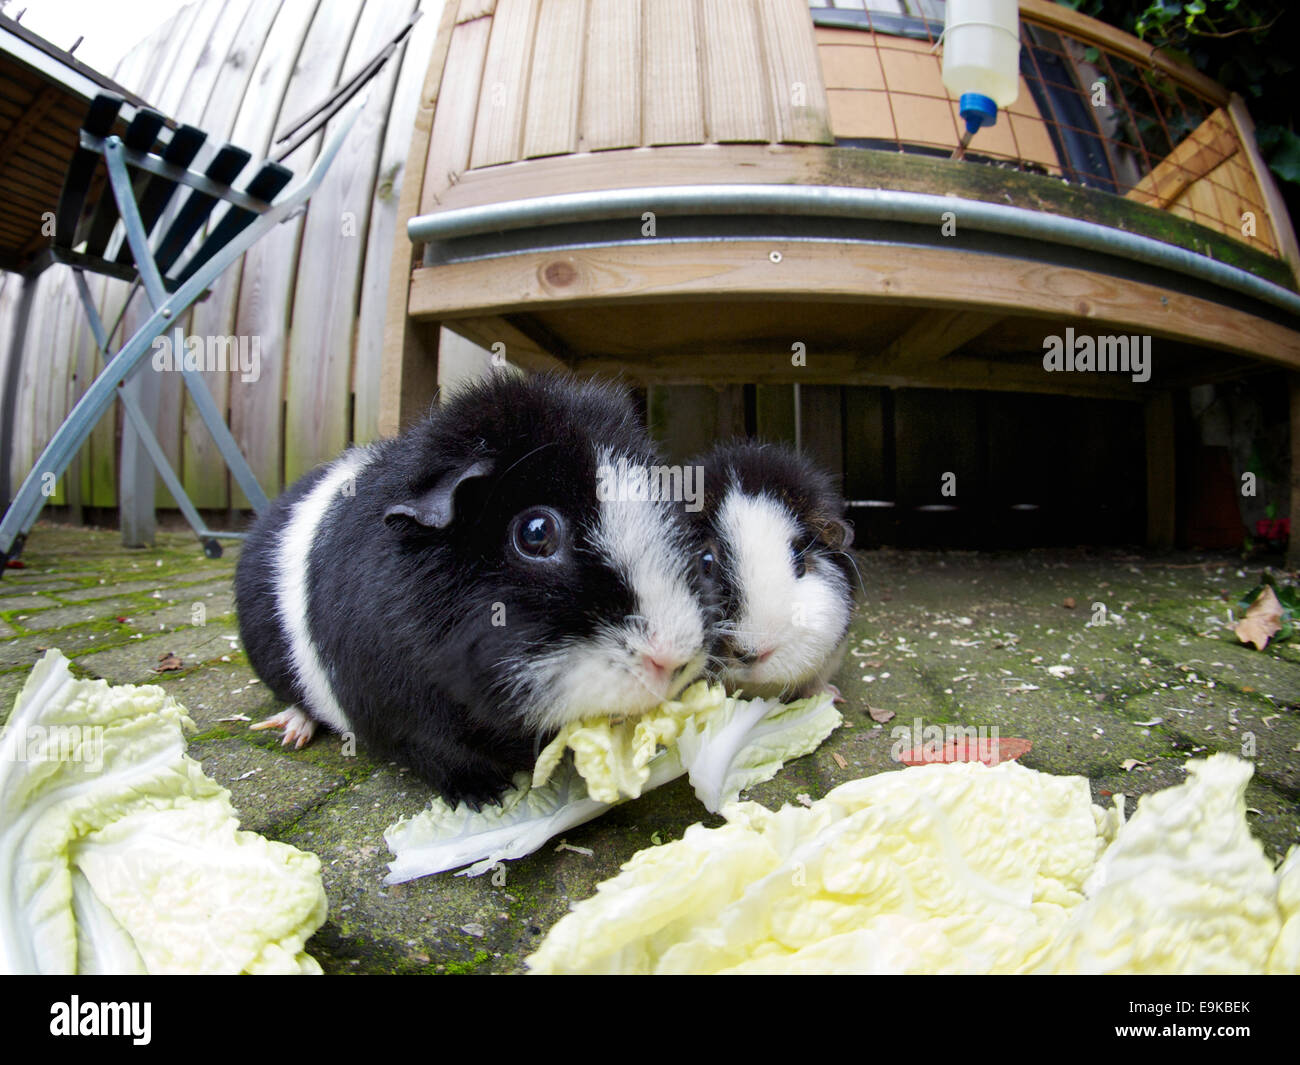 Zwei schwarze und weiße Meerschweinchen essen Kohl in den Hinterhof. Fisheye-Bild. Breda, Niederlande Stockfoto